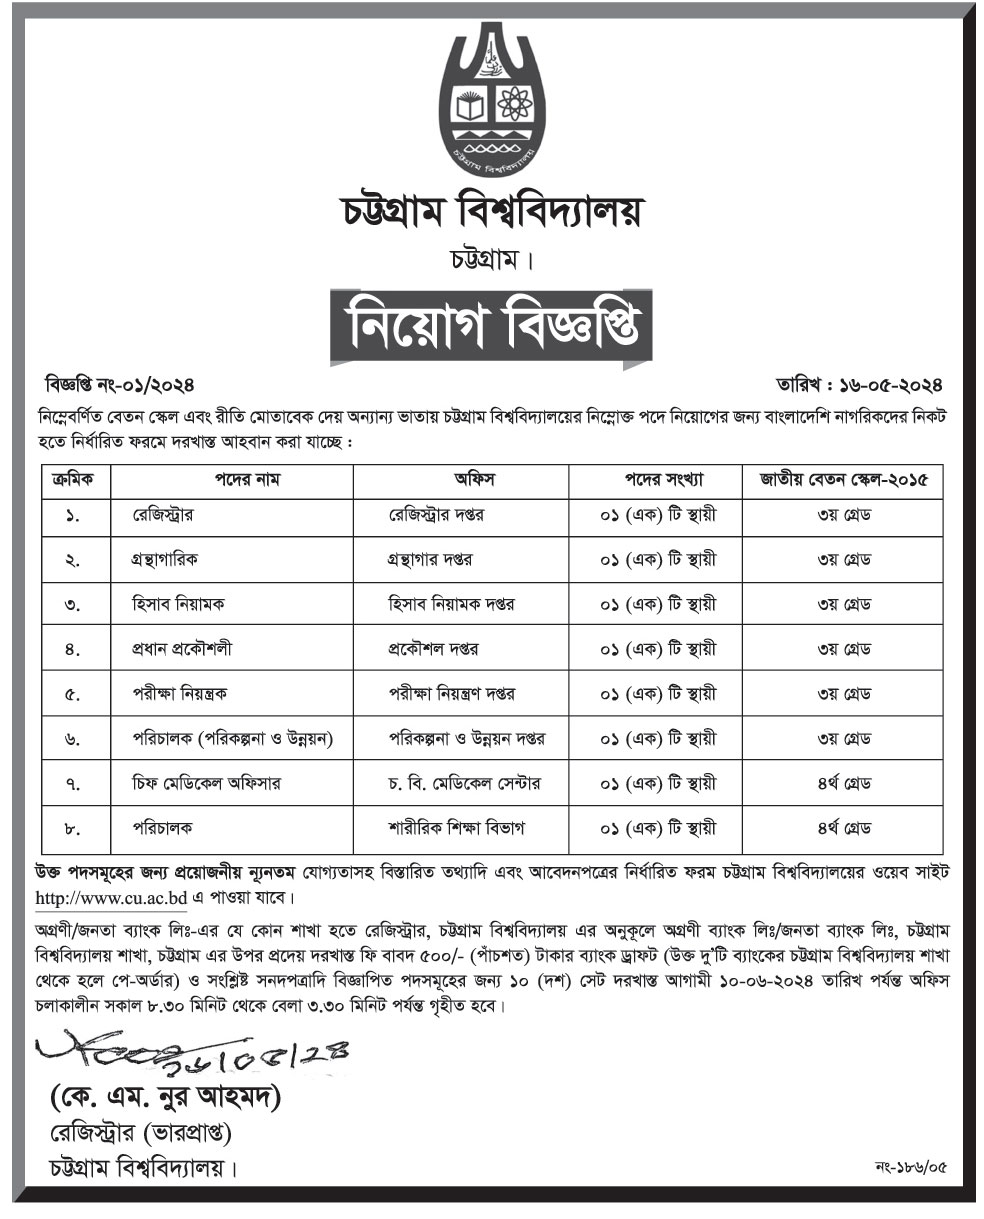 Chittagong job circular